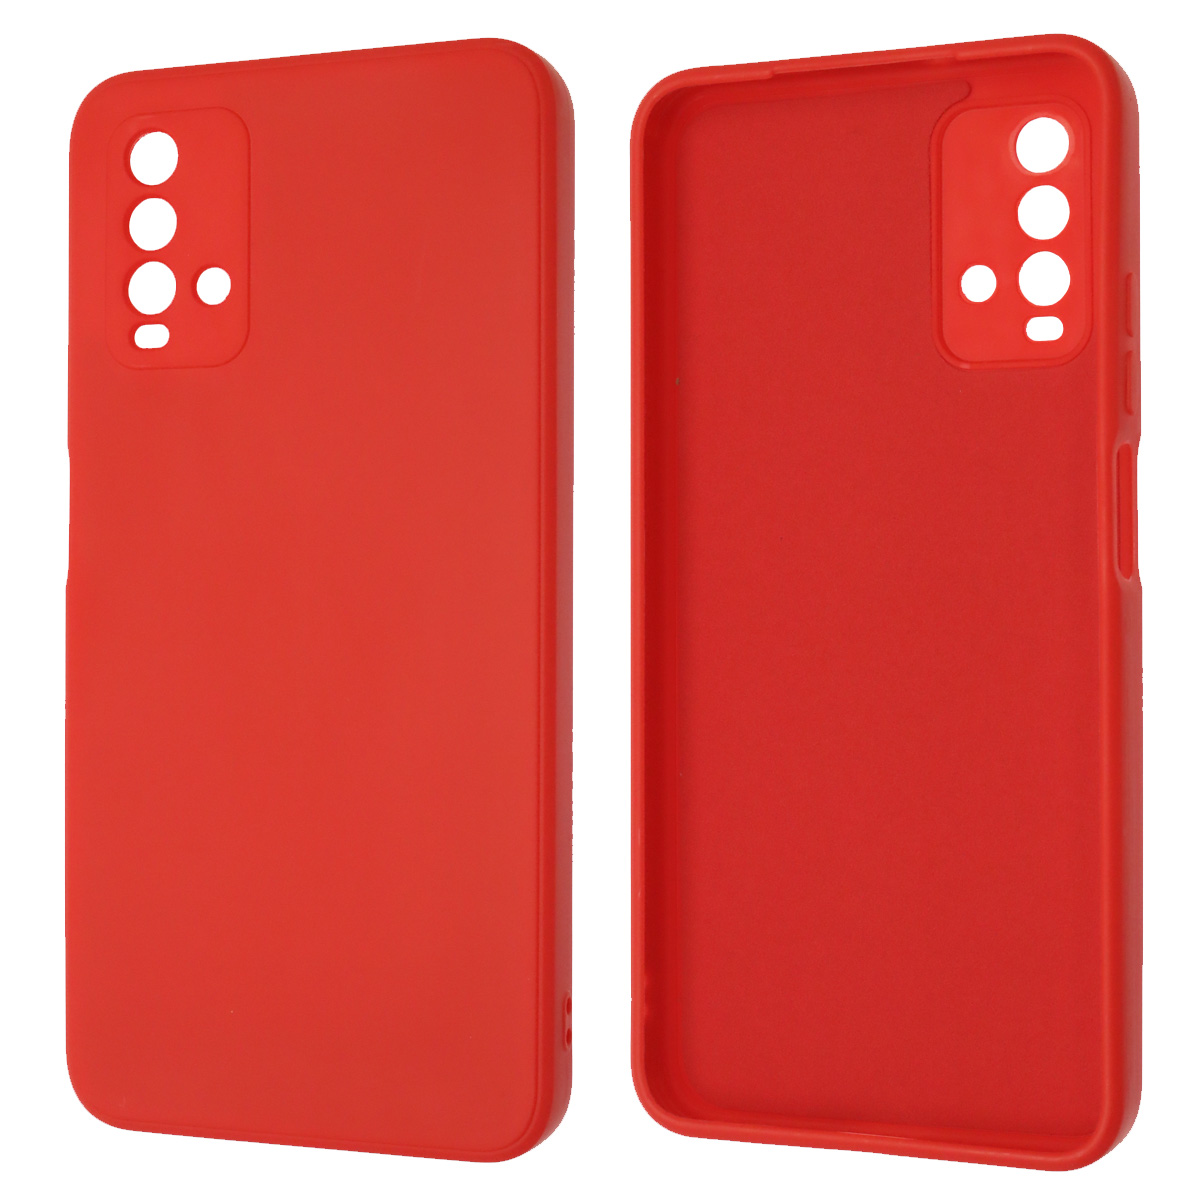 Чехол накладка для XIAOMI Redmi 9T, силикон, бархат, цвет красный